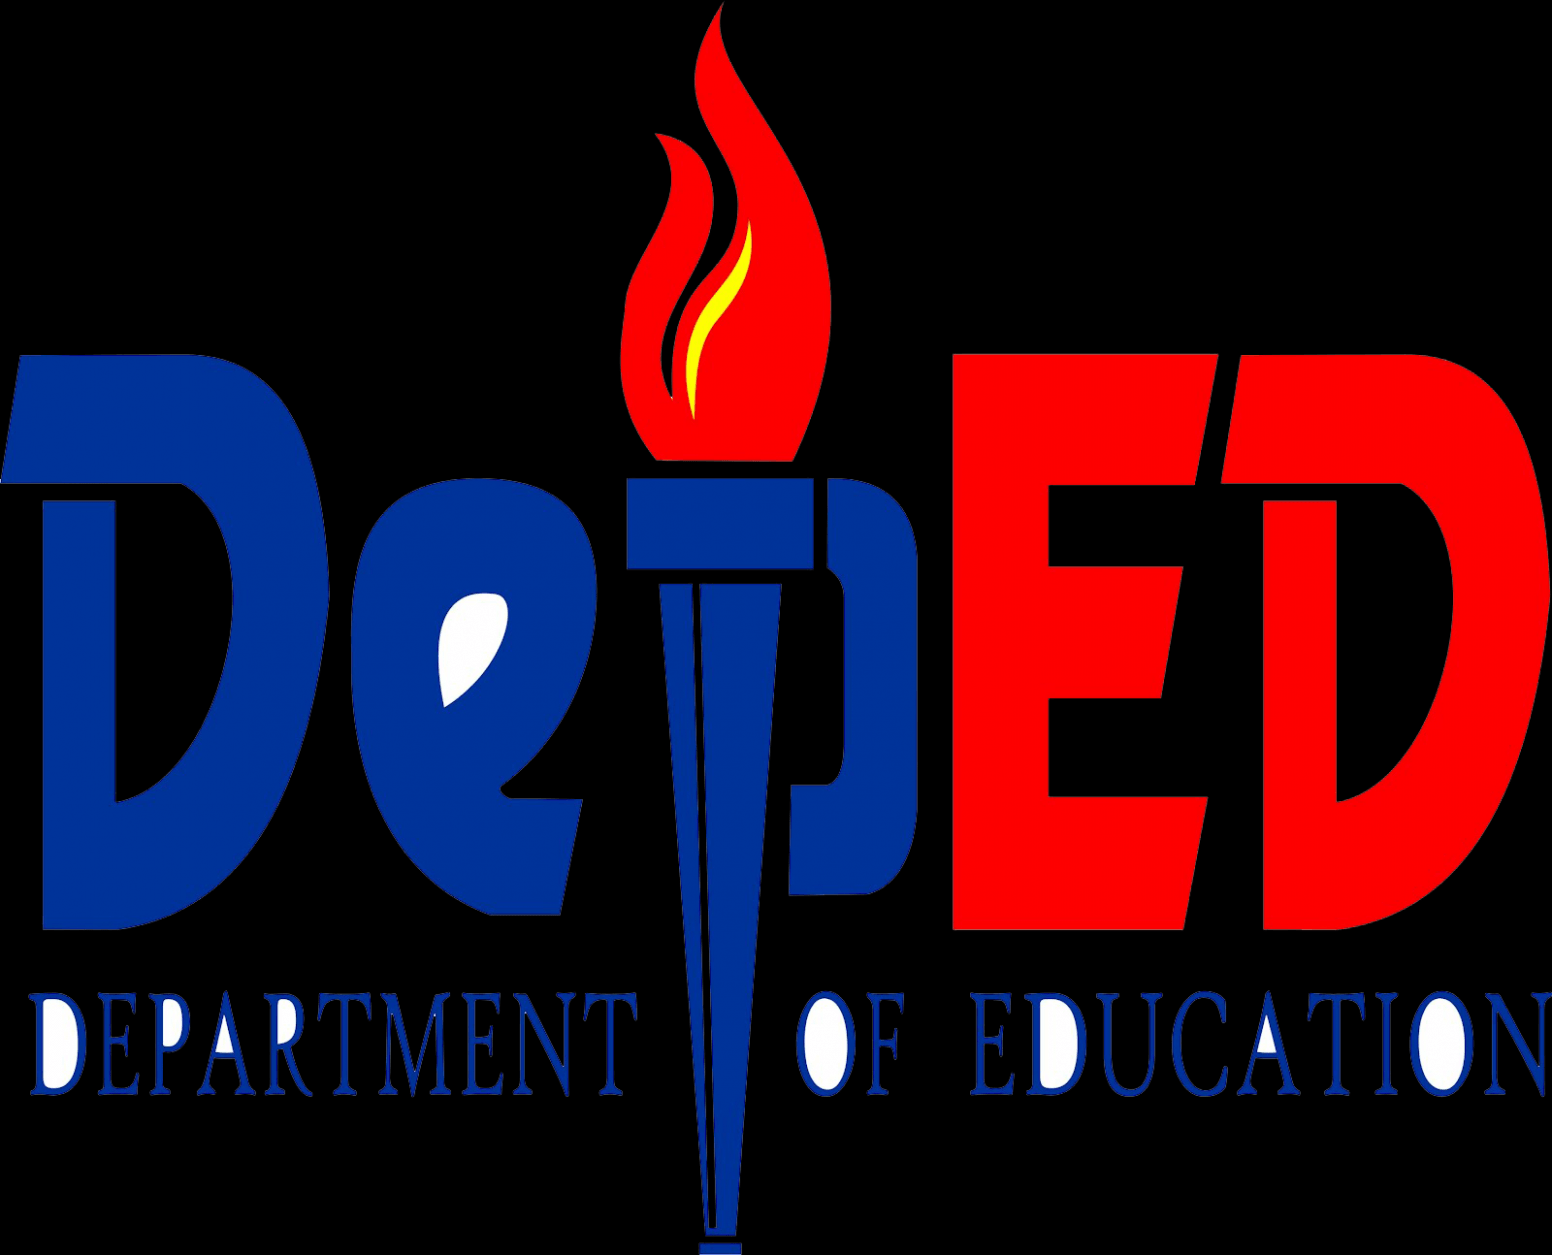 DepEd Logo - LogoDix